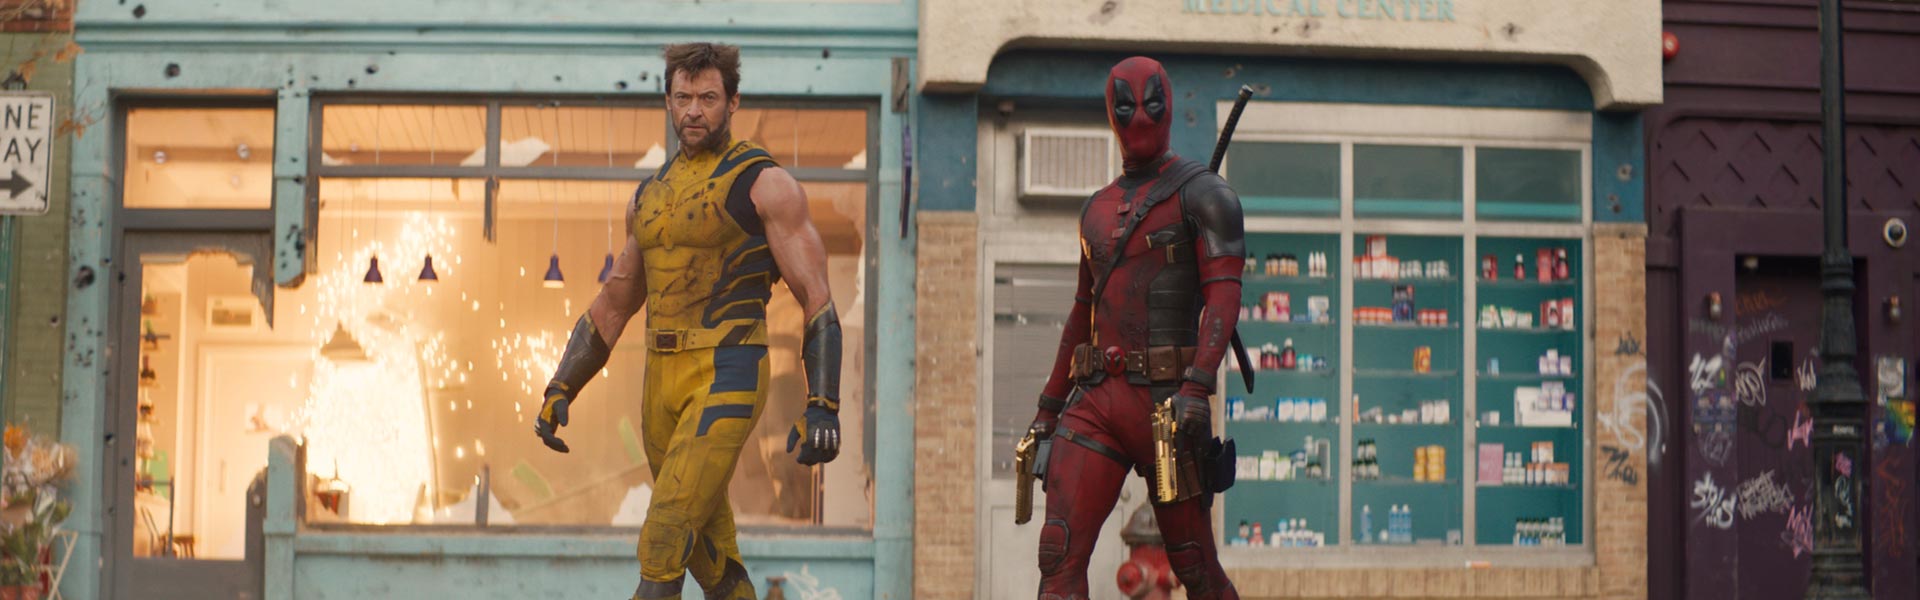 ‘Deadpool & Wolverine’: Nuevo tráiler, personajes y todo sobre la película del Universo Cinematográfico de Marvel